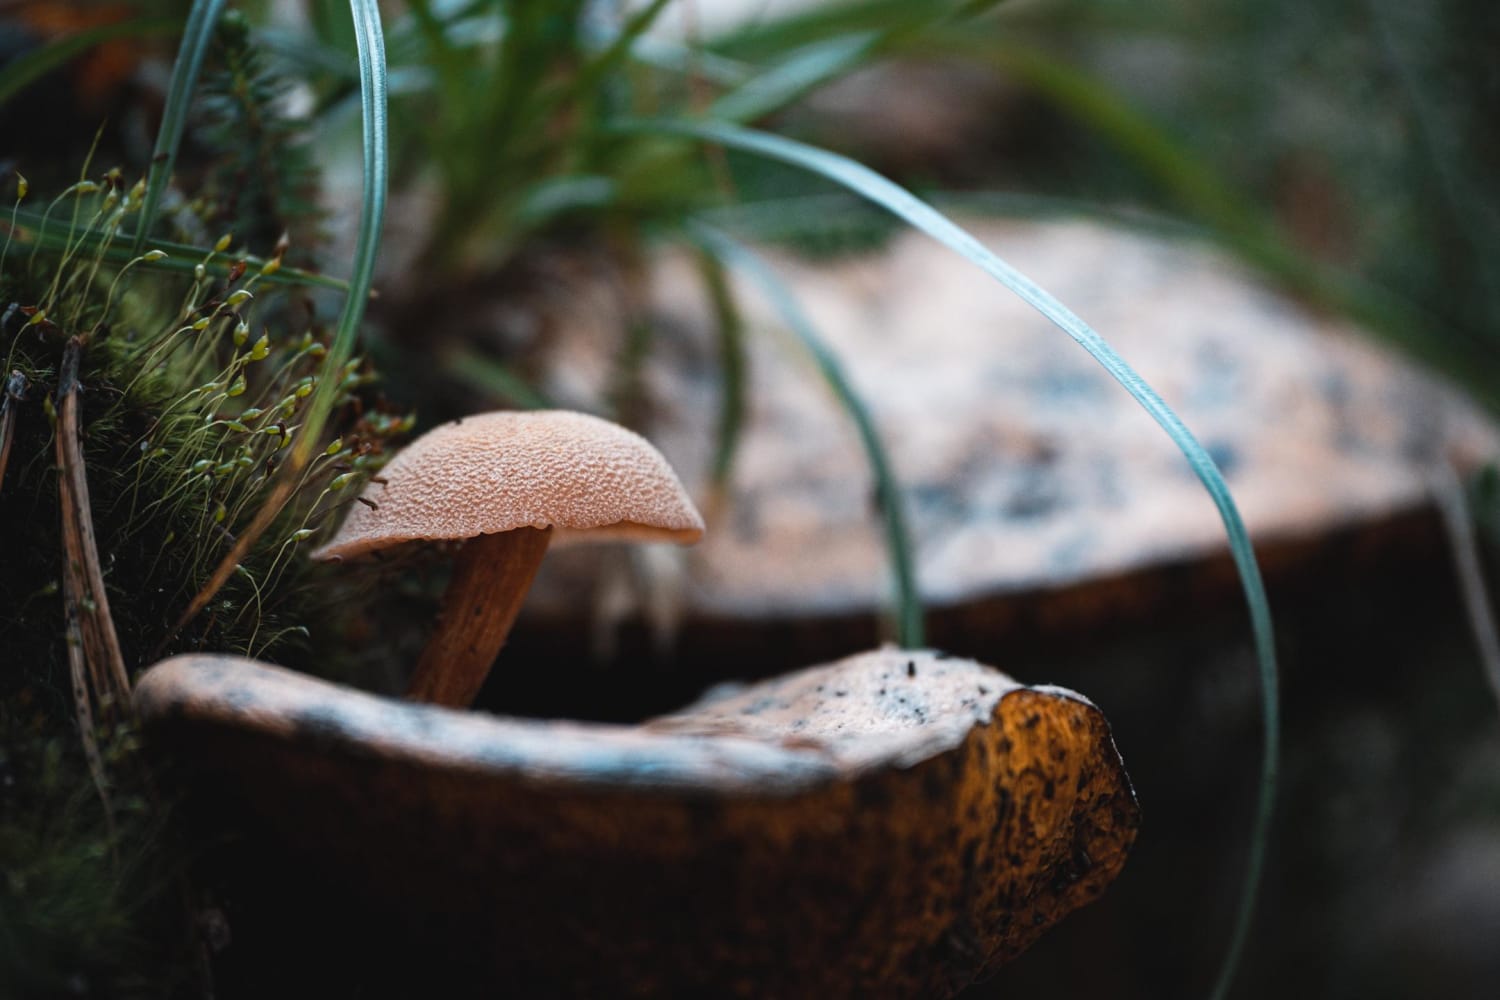 Mushroom growing on a mushroom